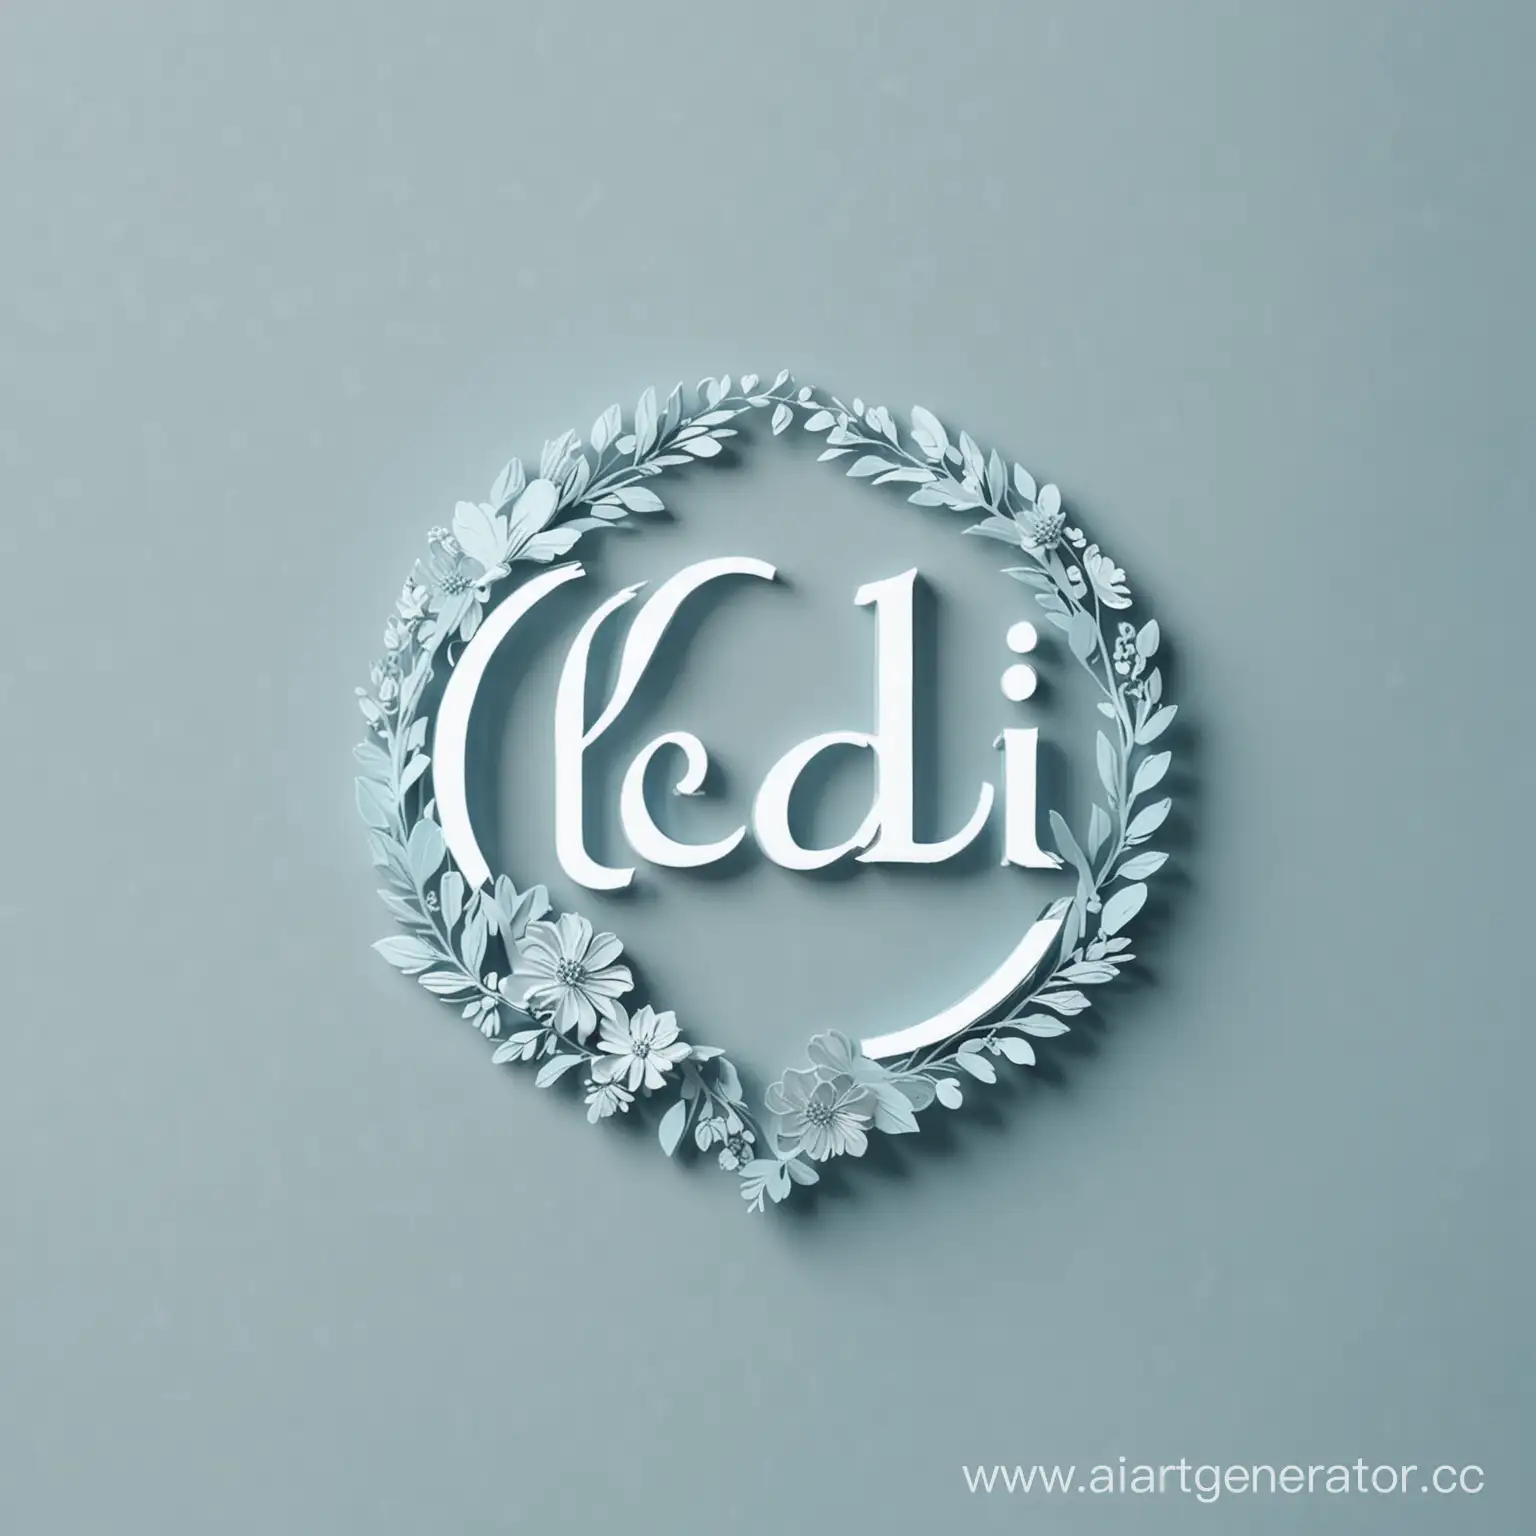 логотип "LeDi" в нежно голубом оттенке, отражающий магазин цветов